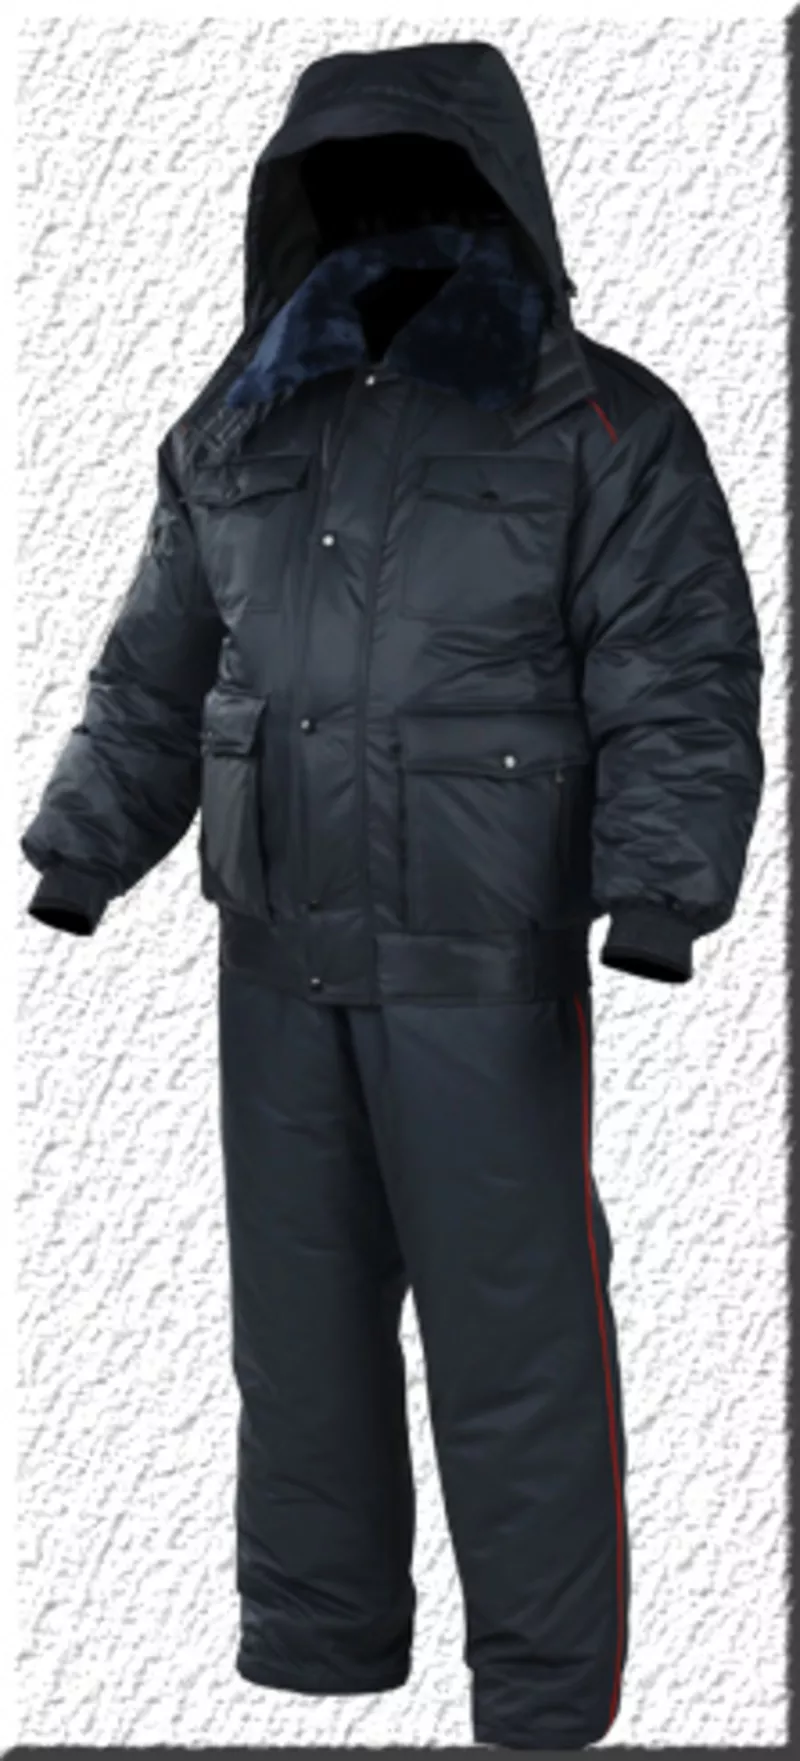 форменная куртка бушлат для мвд полиции женская зимняя 6